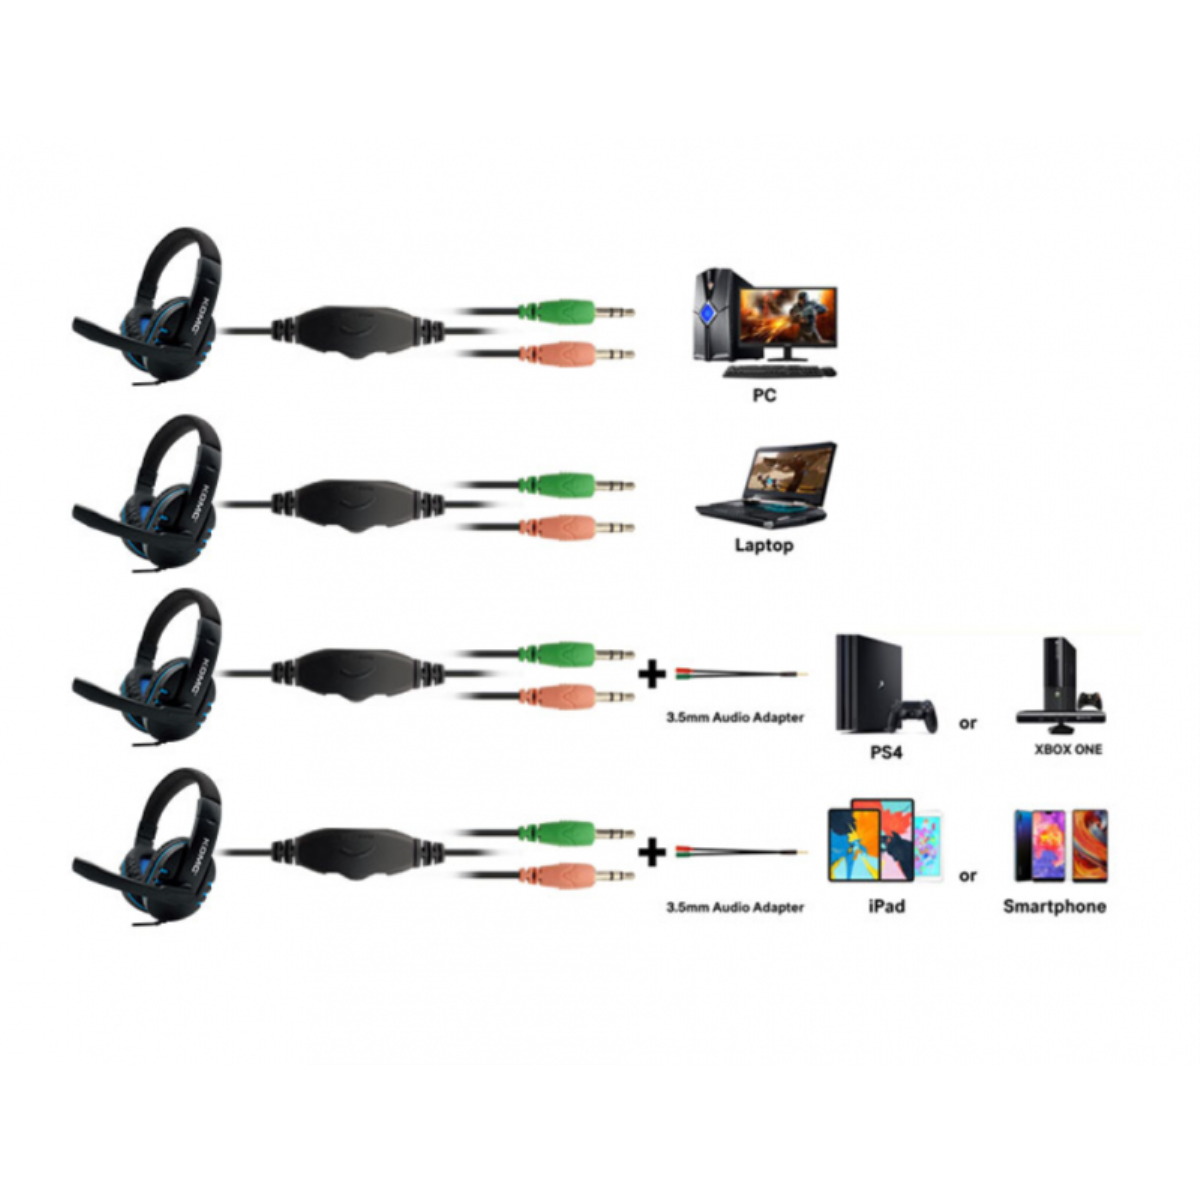 Auriculares Casco Gaming Smartek Estéreo Con Cable Y Micrófono